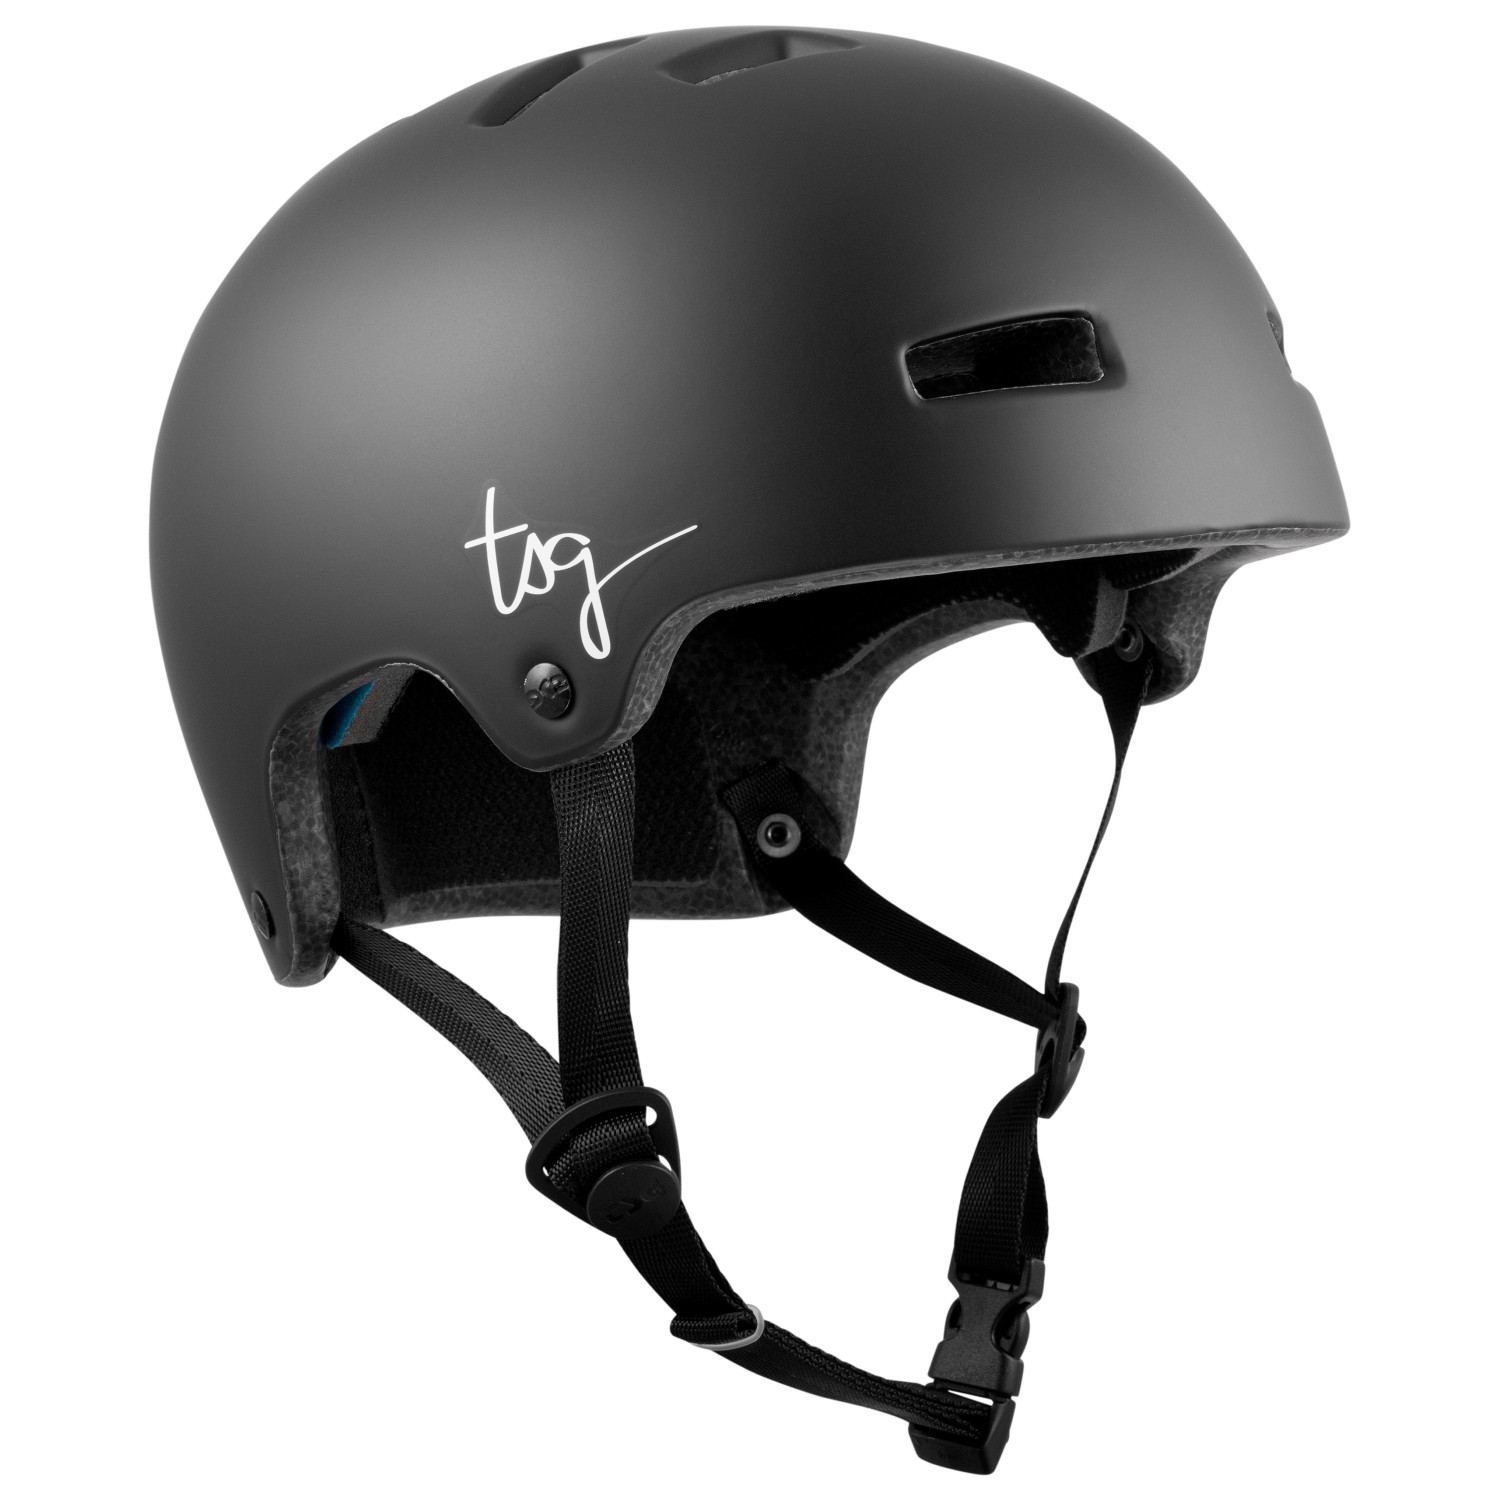 цена Велосипедный шлем Tsg Women's Ivy Solid Color, цвет Satin Black